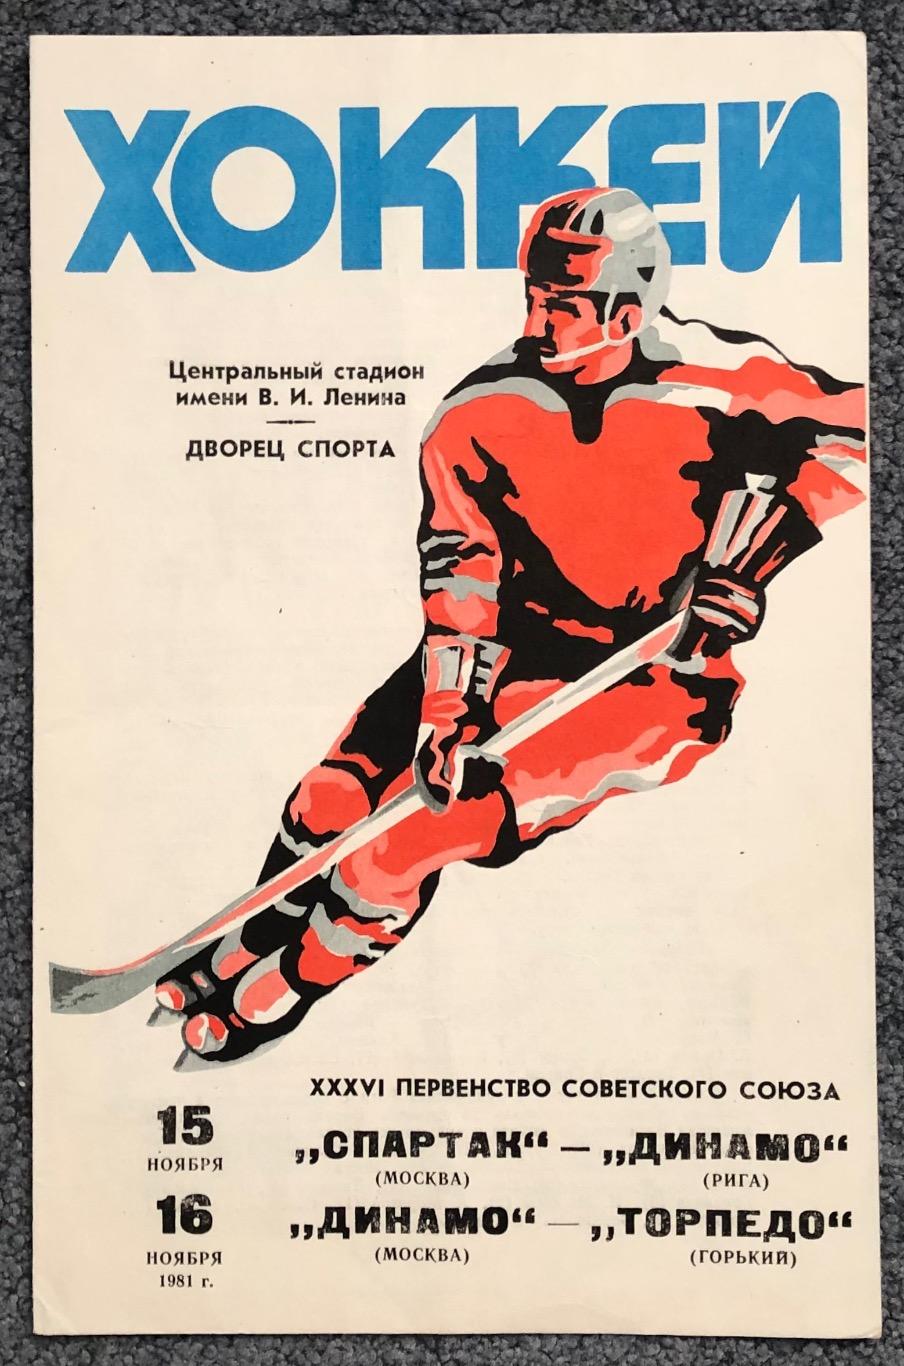 Спартак Москва - Динамо Рига, Динамо Москва - Торпедо Горький, 15/16.11.1981